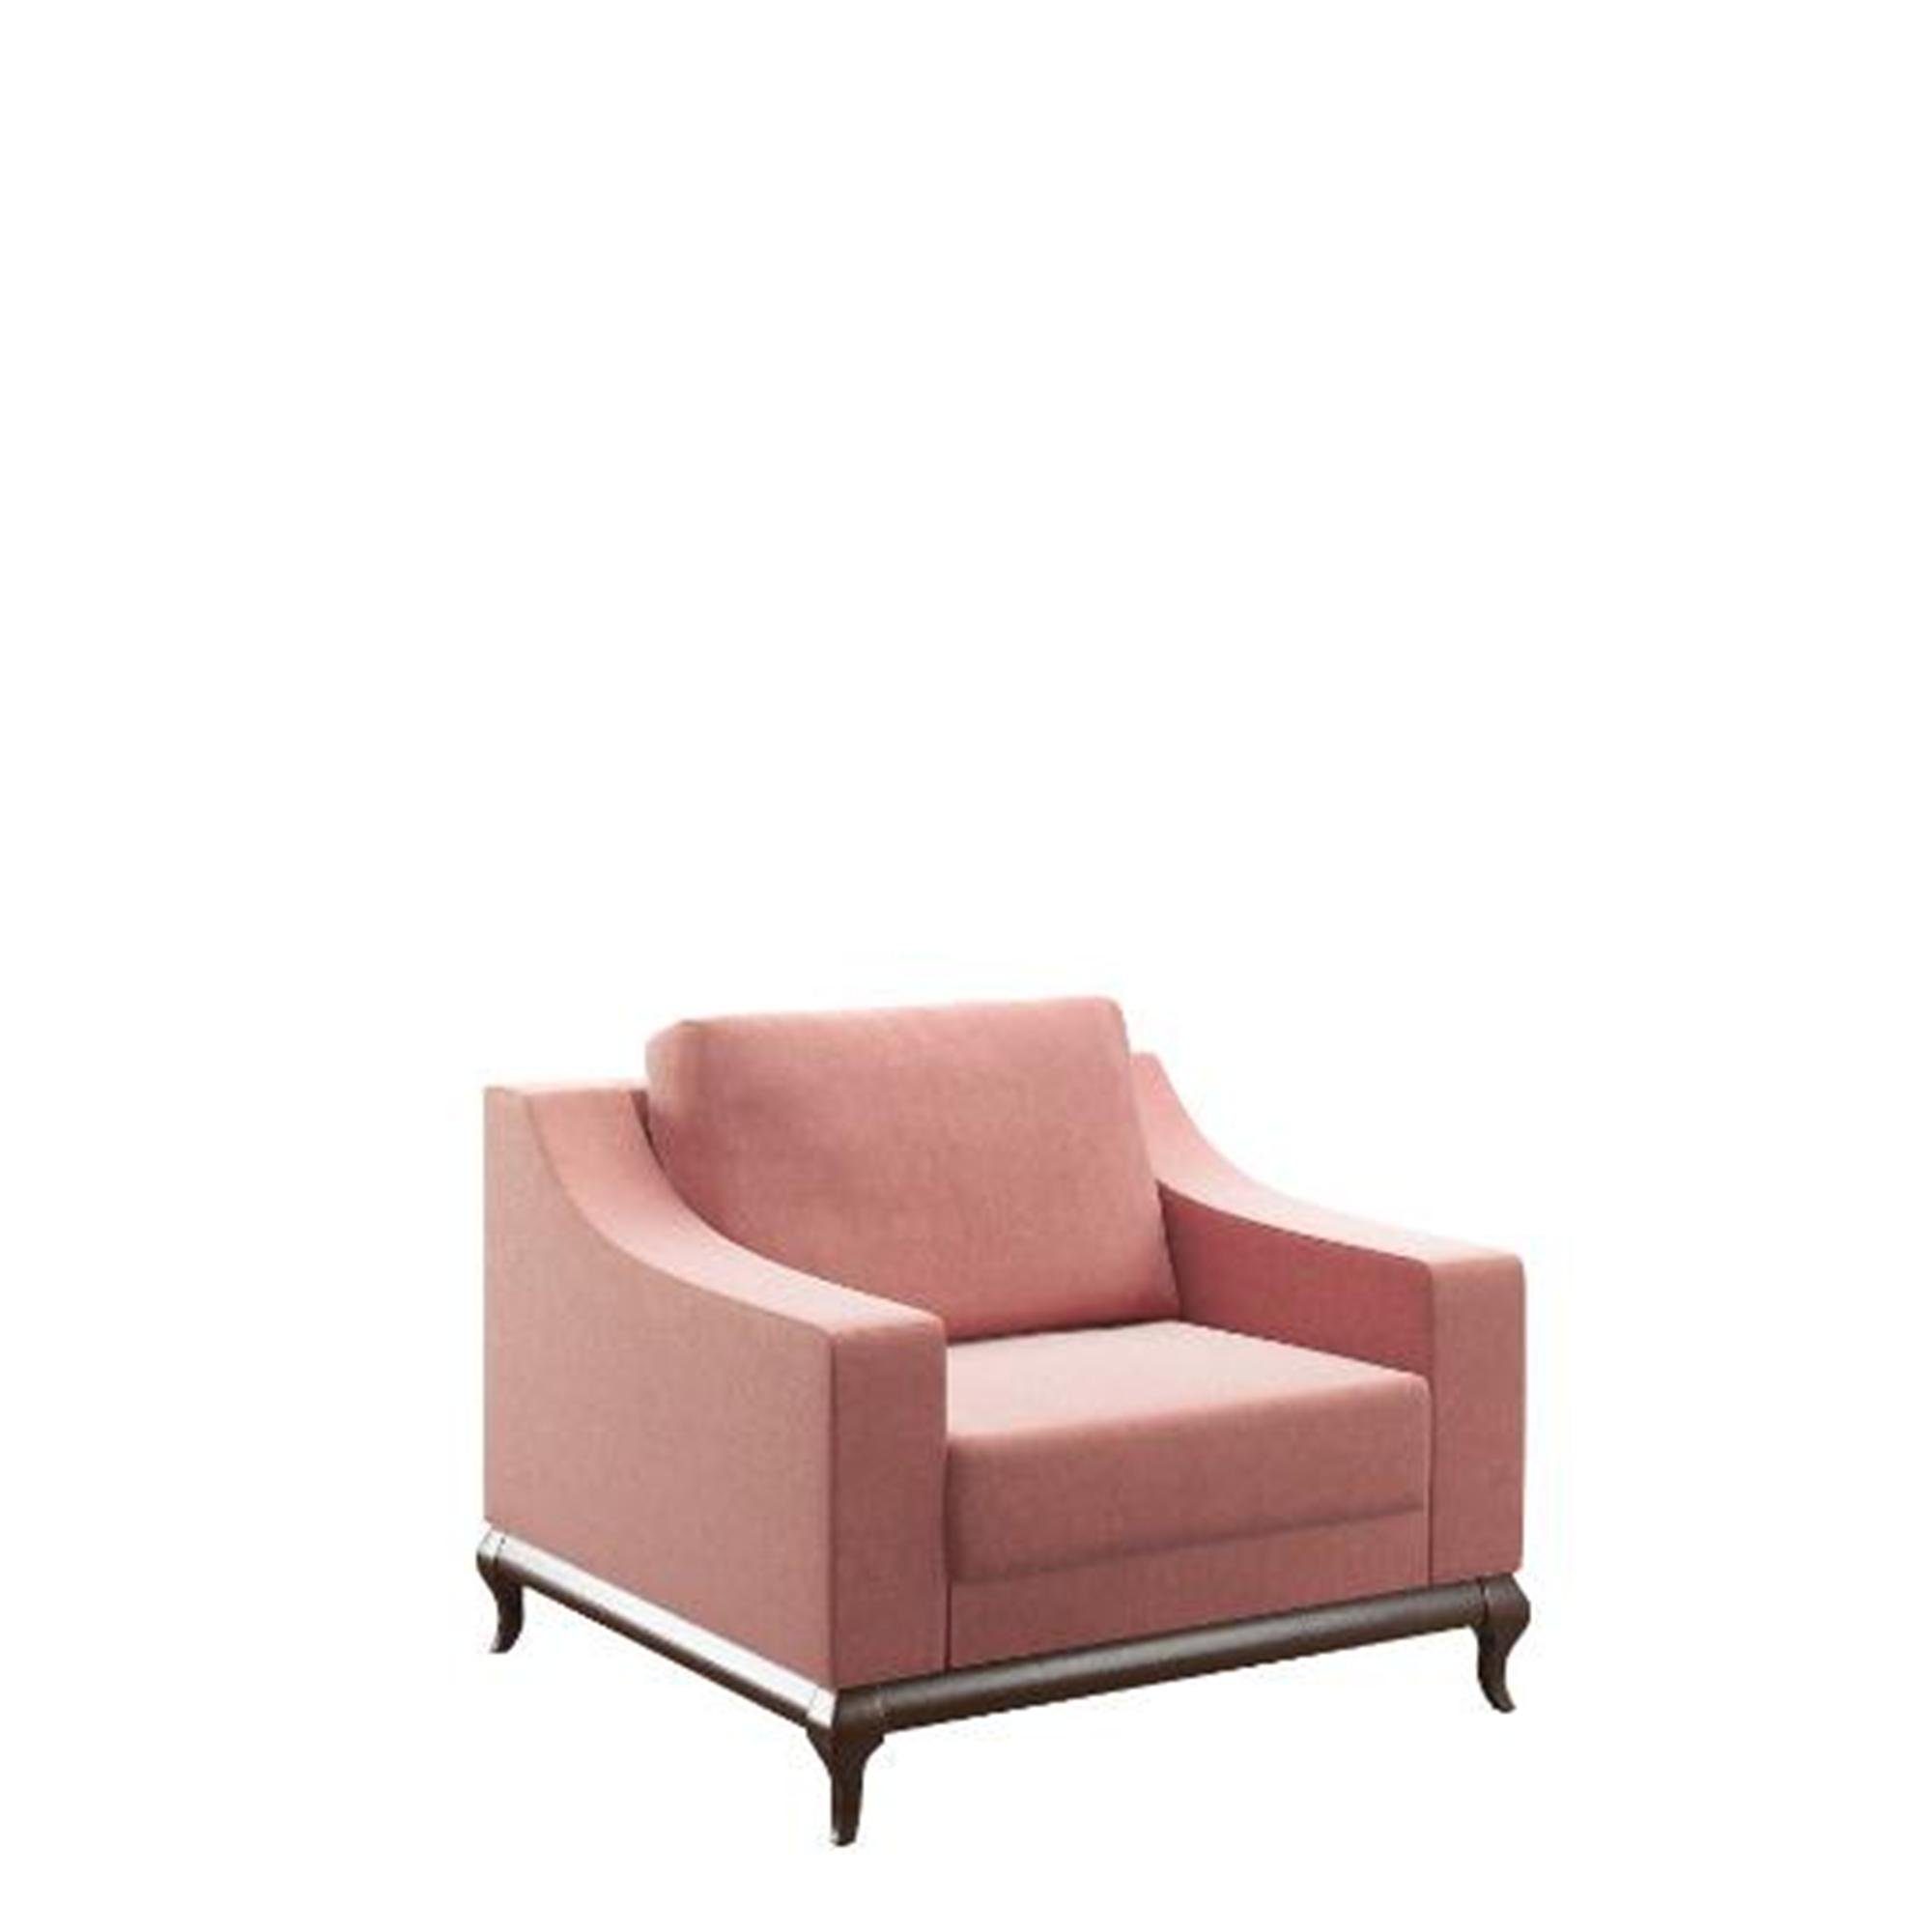 JVmoebel Sessel, Sessel Design Möbel klassische Stil Wohnzimmer 95 x 100 cm Lounge Sessel Neu